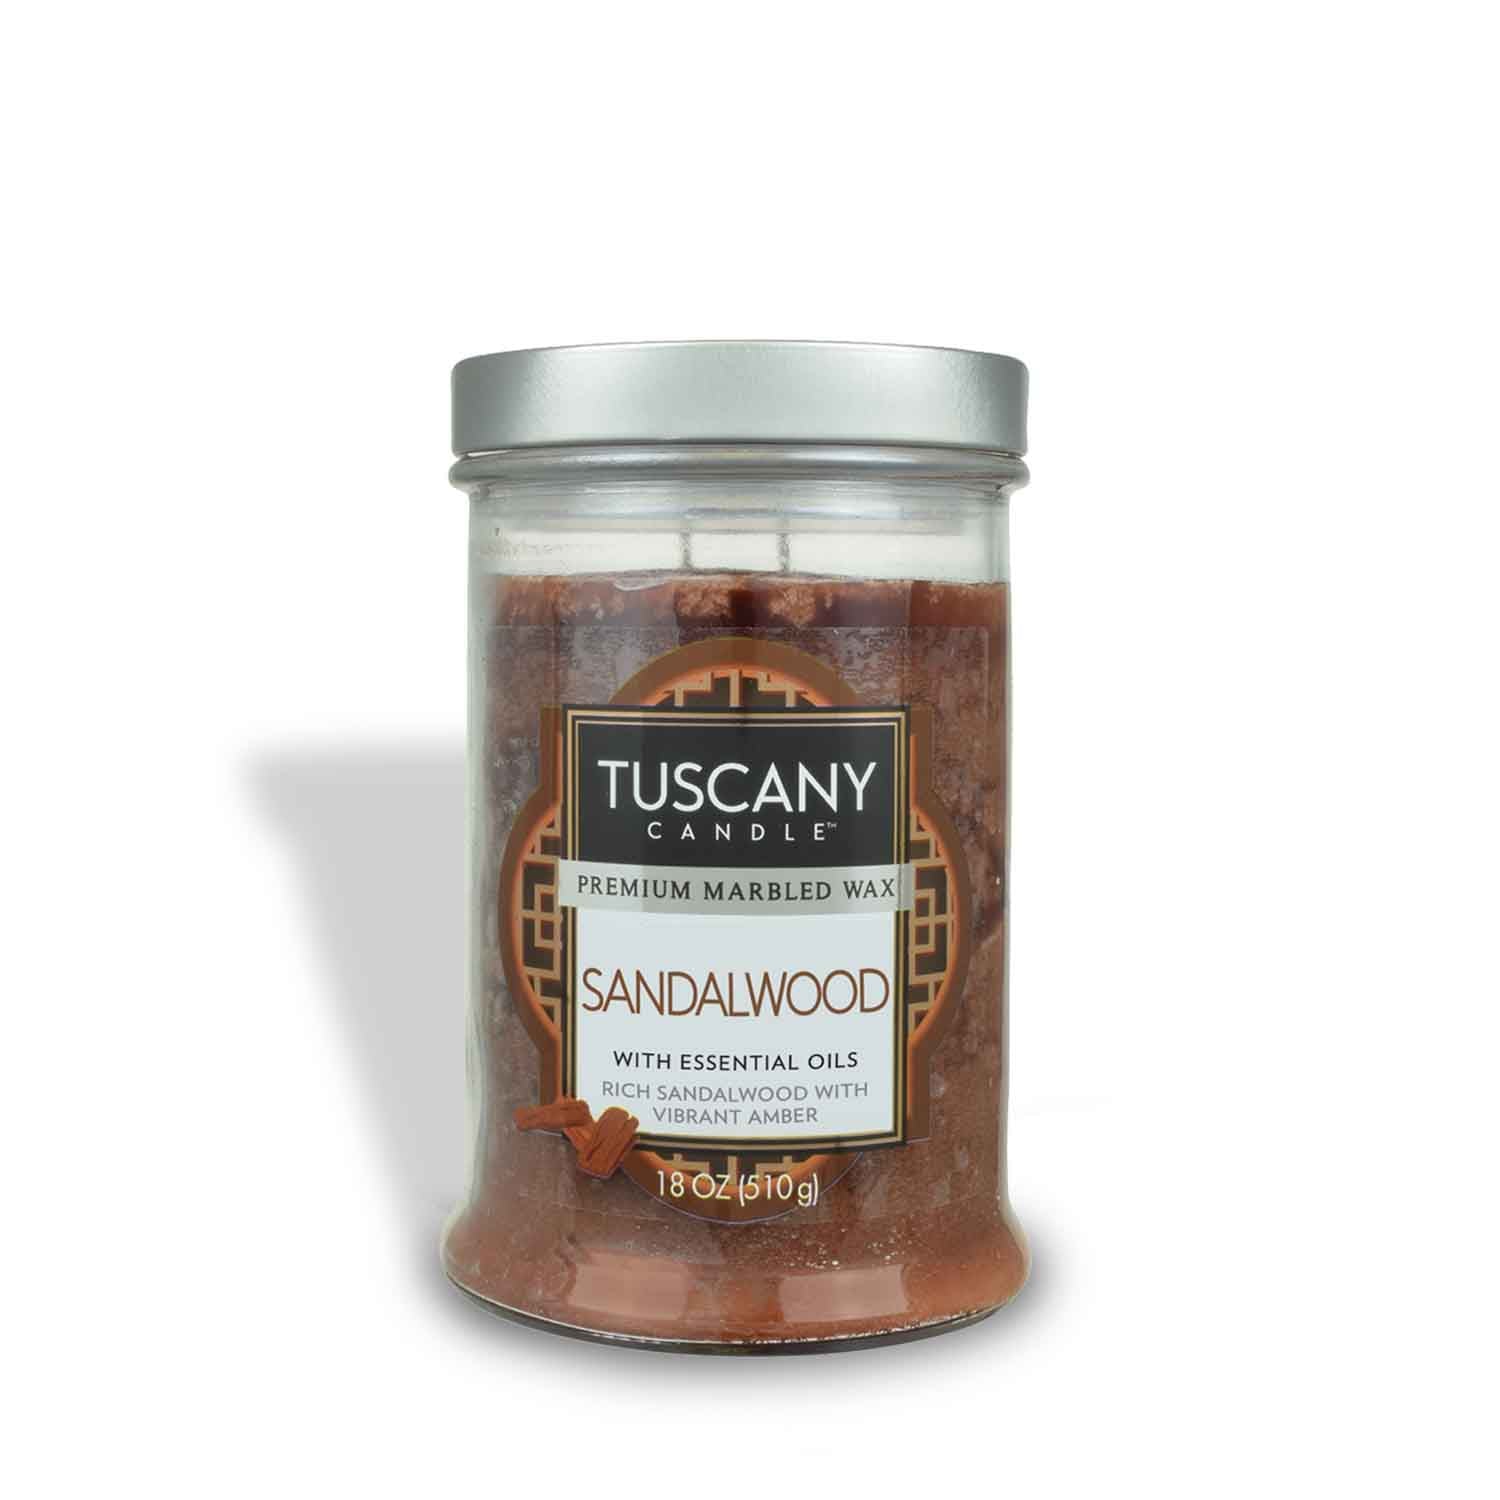 Tuscany Candle® EVD Sandalwood Long-Lasting Scented Jar Candle (18 oz).